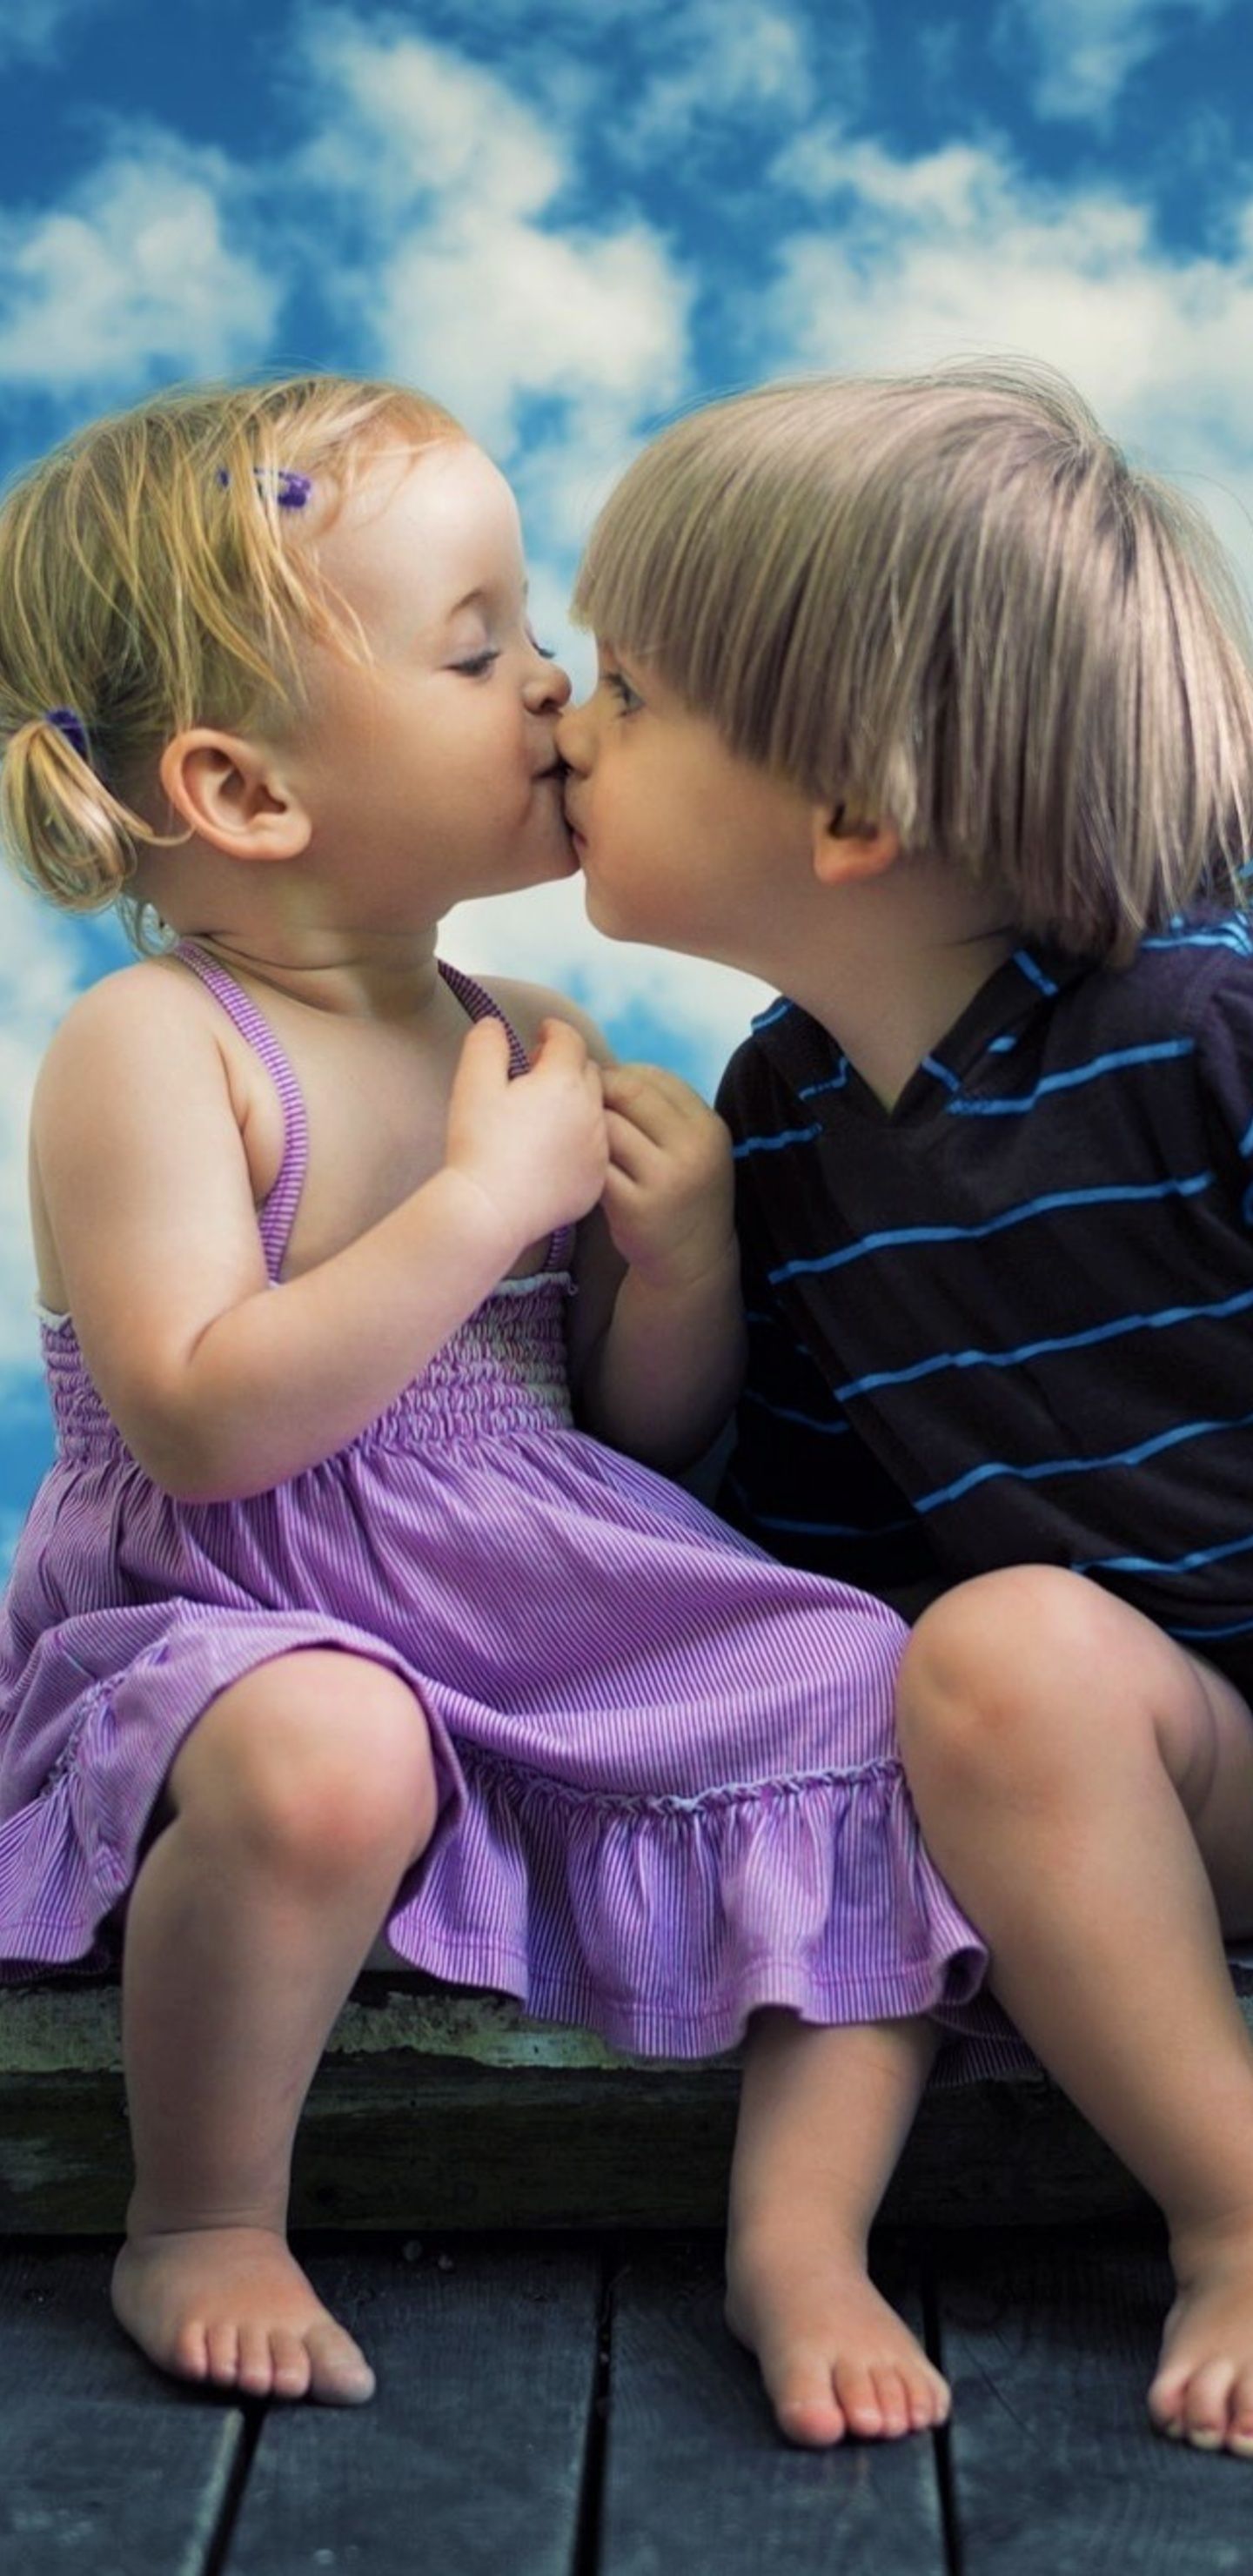 Little Boy Little Girl Cute Kiss Samsung Galaxy Note 8